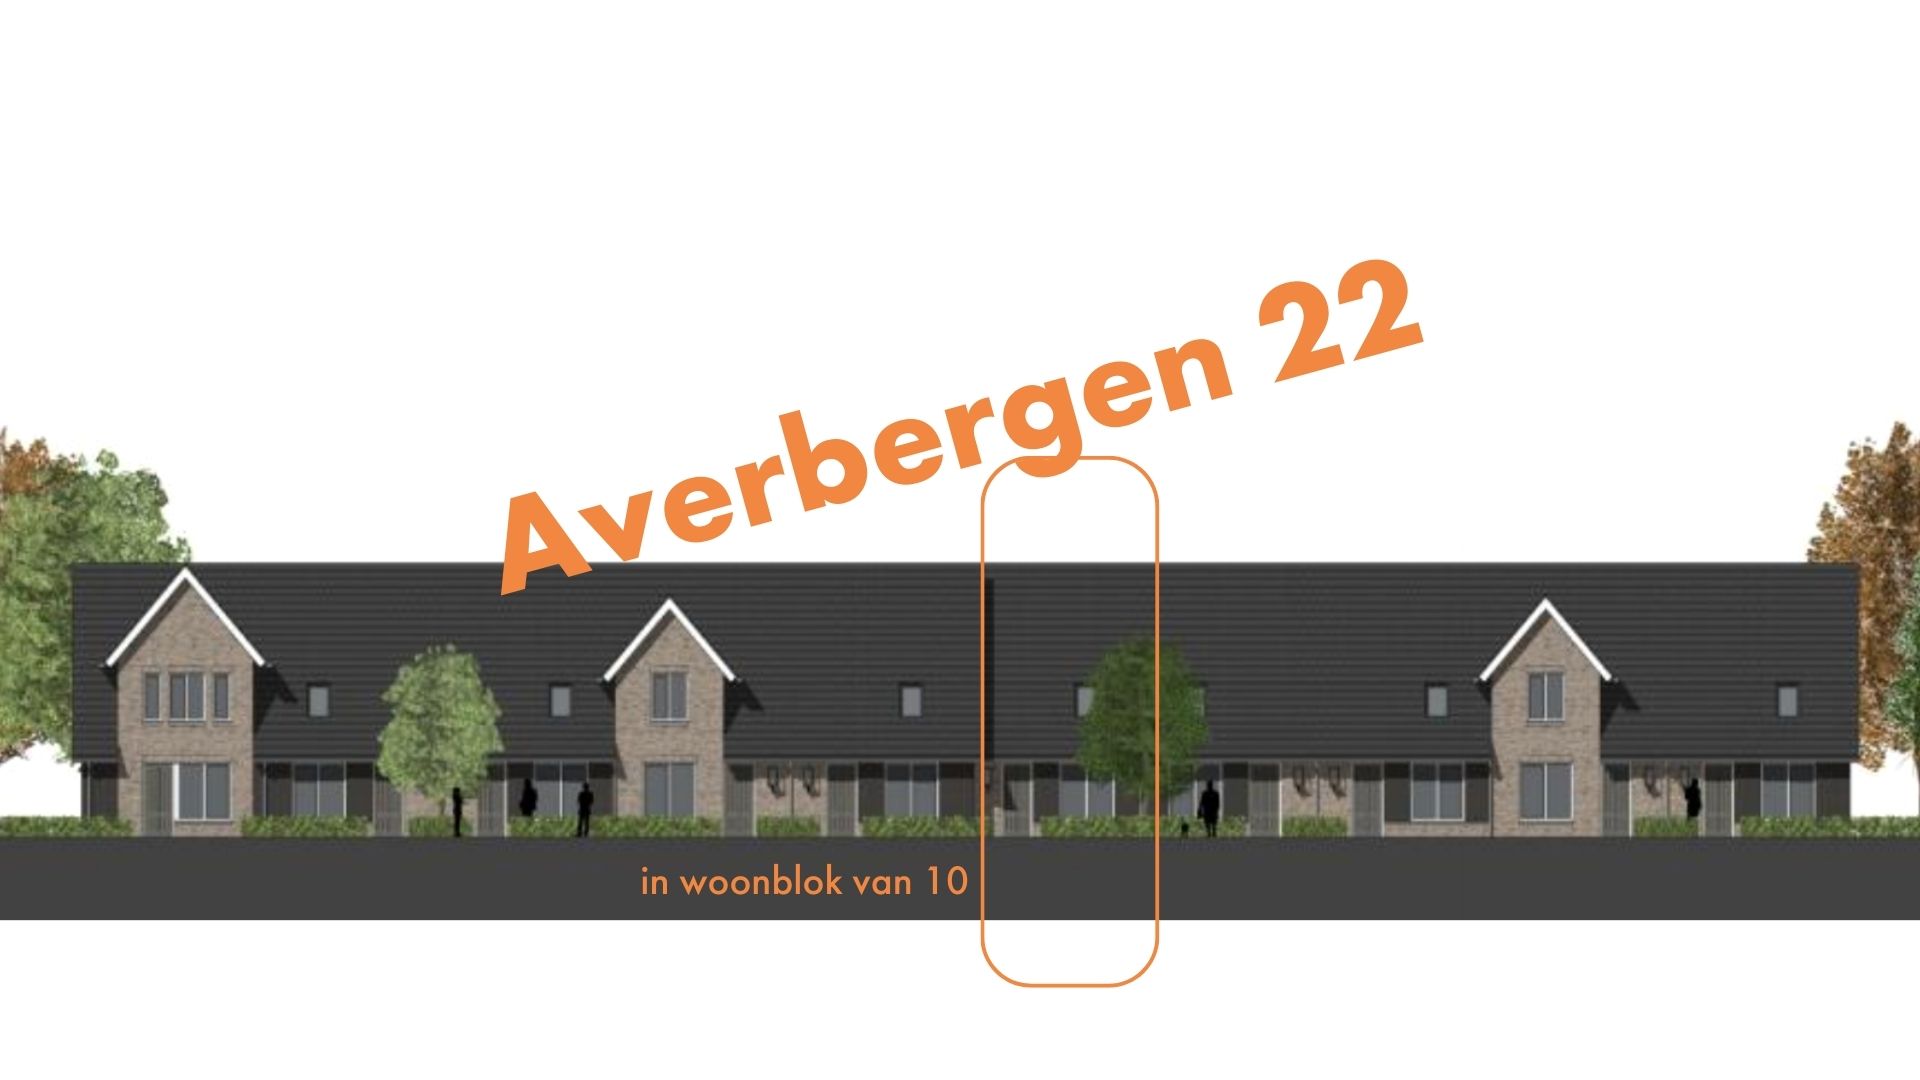 Averbergen 22, 8121 BX Olst, Nederland